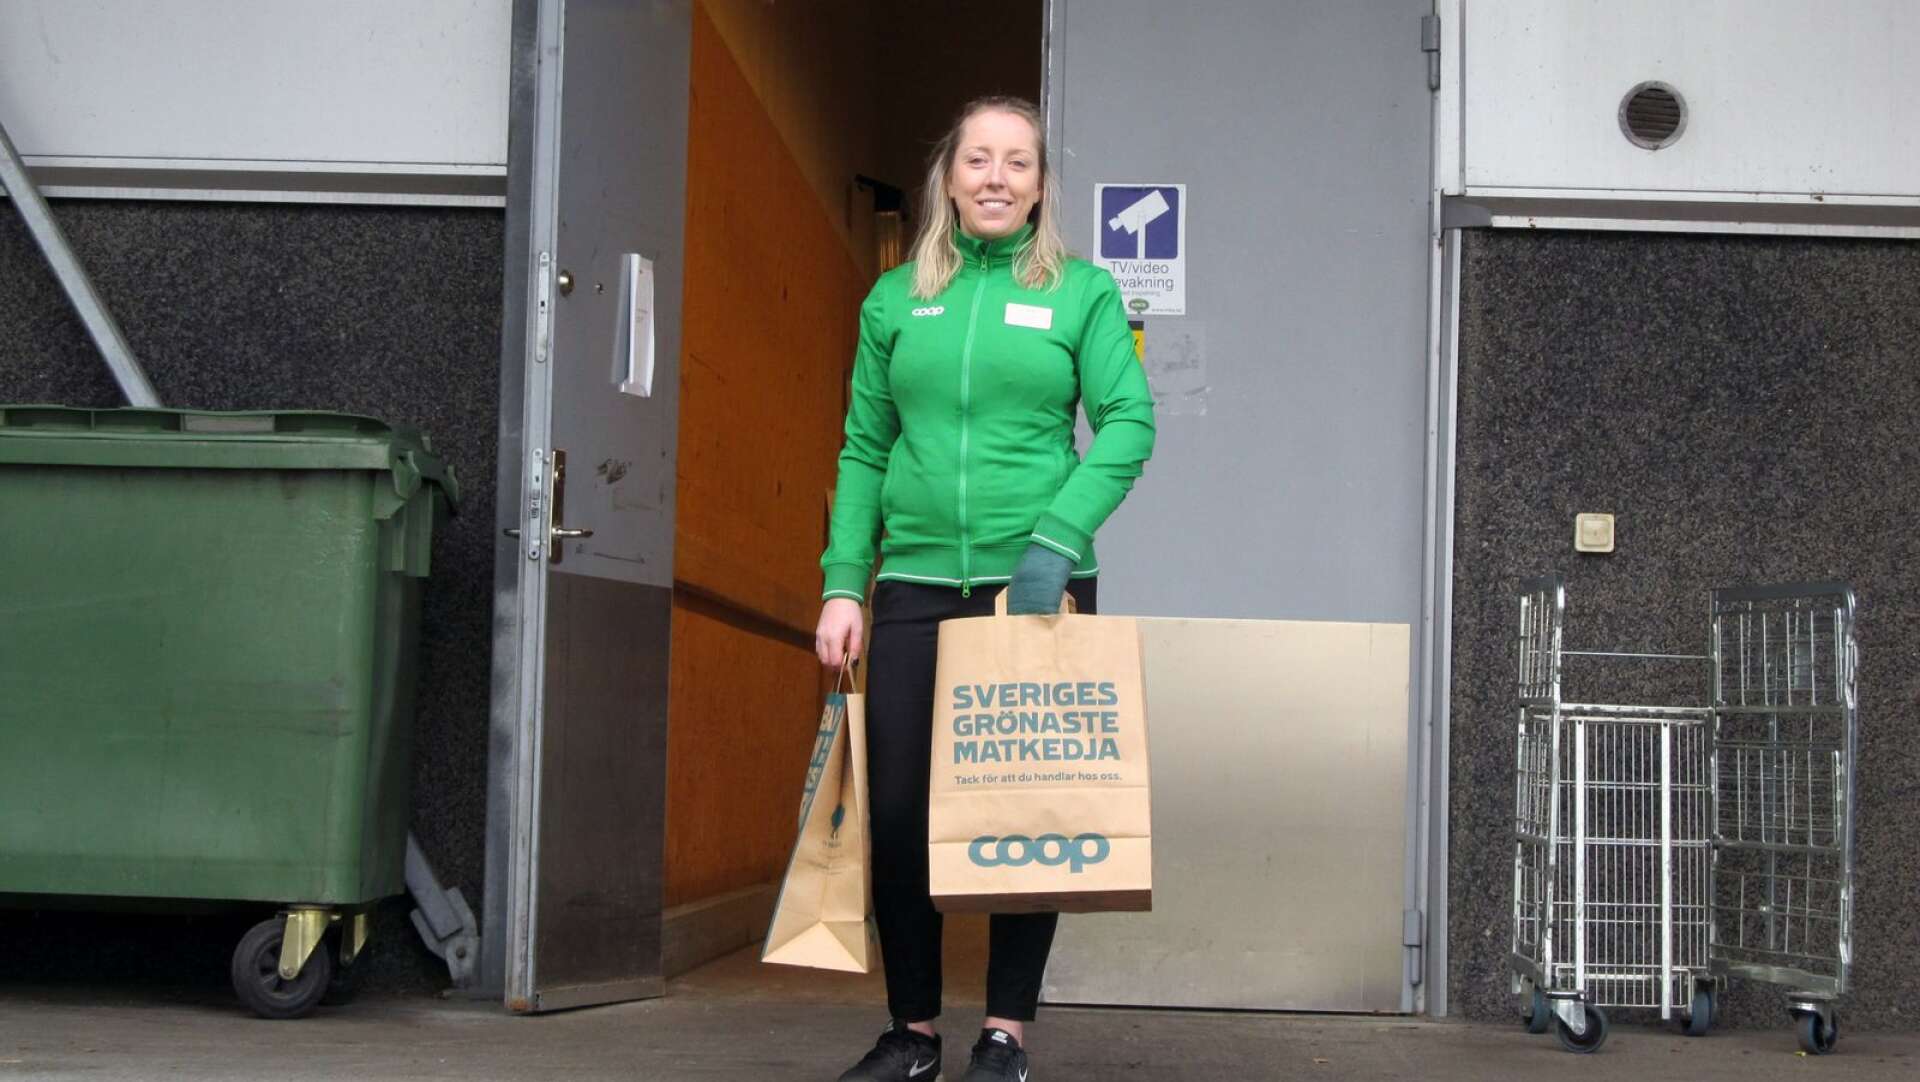 Butikschef Jessica Gustafsson på Coop kan nu leverera färdigpackade matkassar till de som inte kan eller ska vistas i mataffären. Samma service gäller för Ica-butiken.